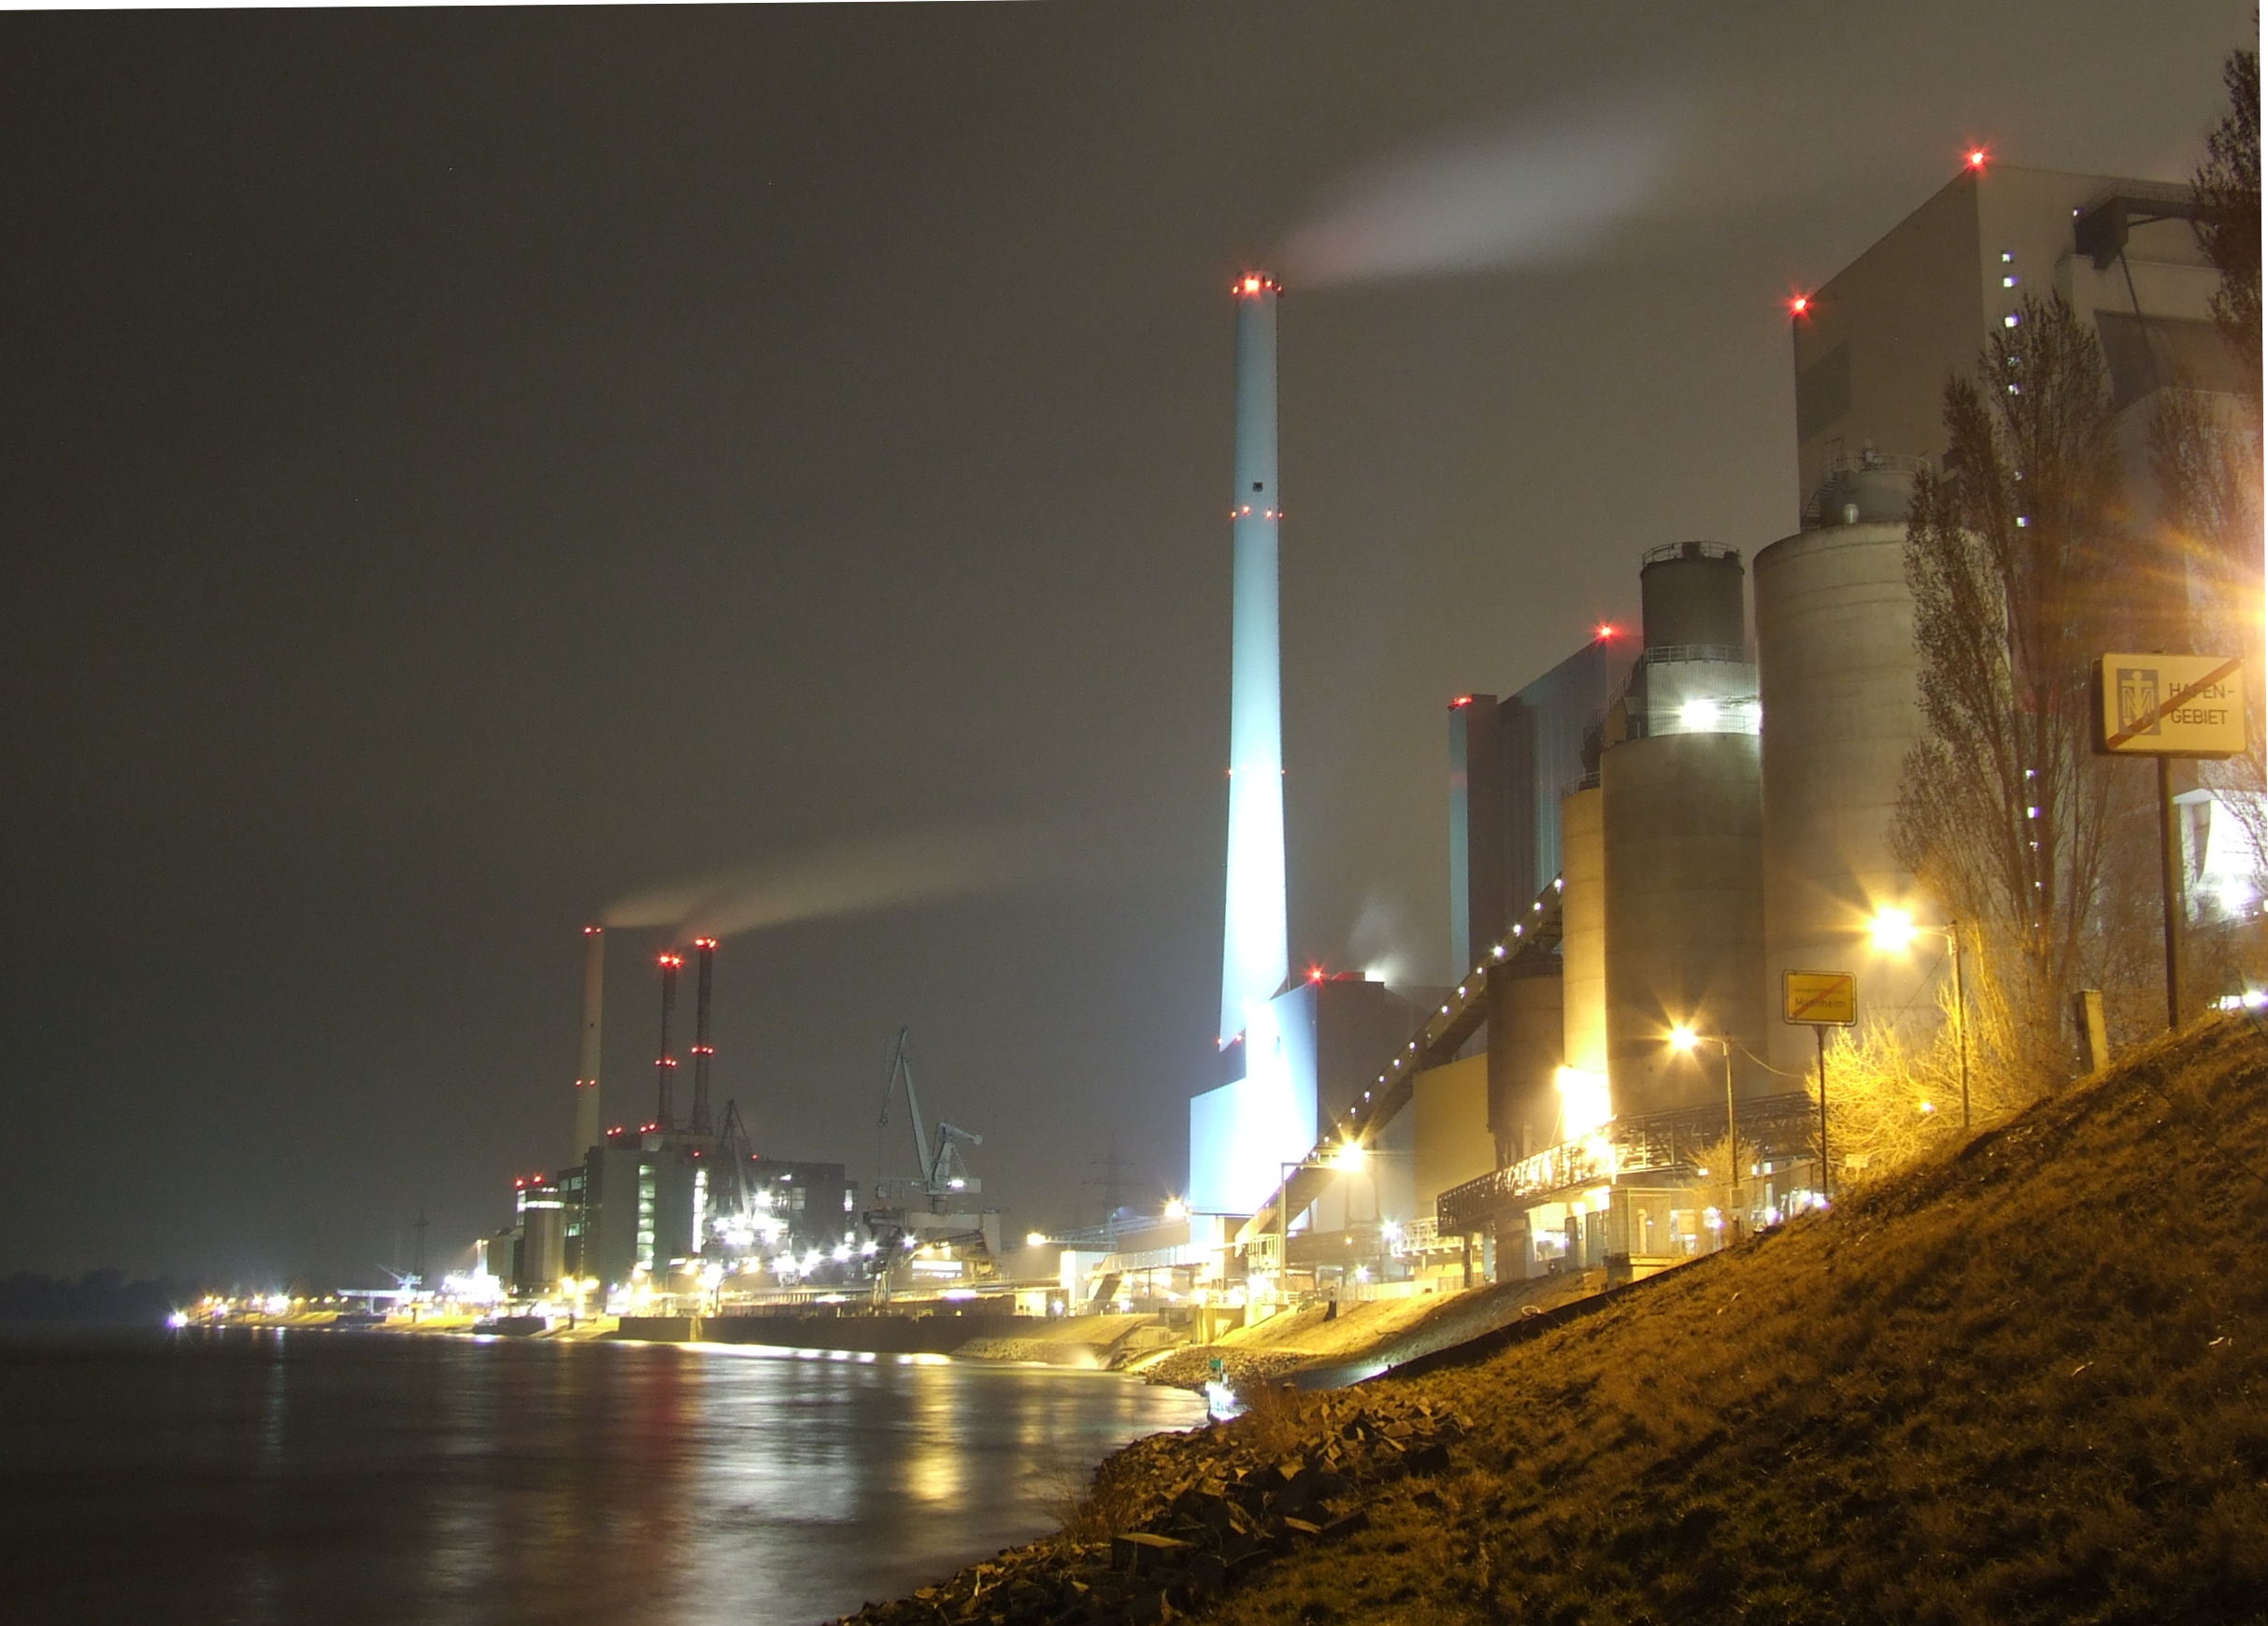 Großkraftwerk Mannheim bei Nacht, aufgenommen vor dem Neubau von Block 9 an der Zufahrtsrampe zur Fähre Altrip